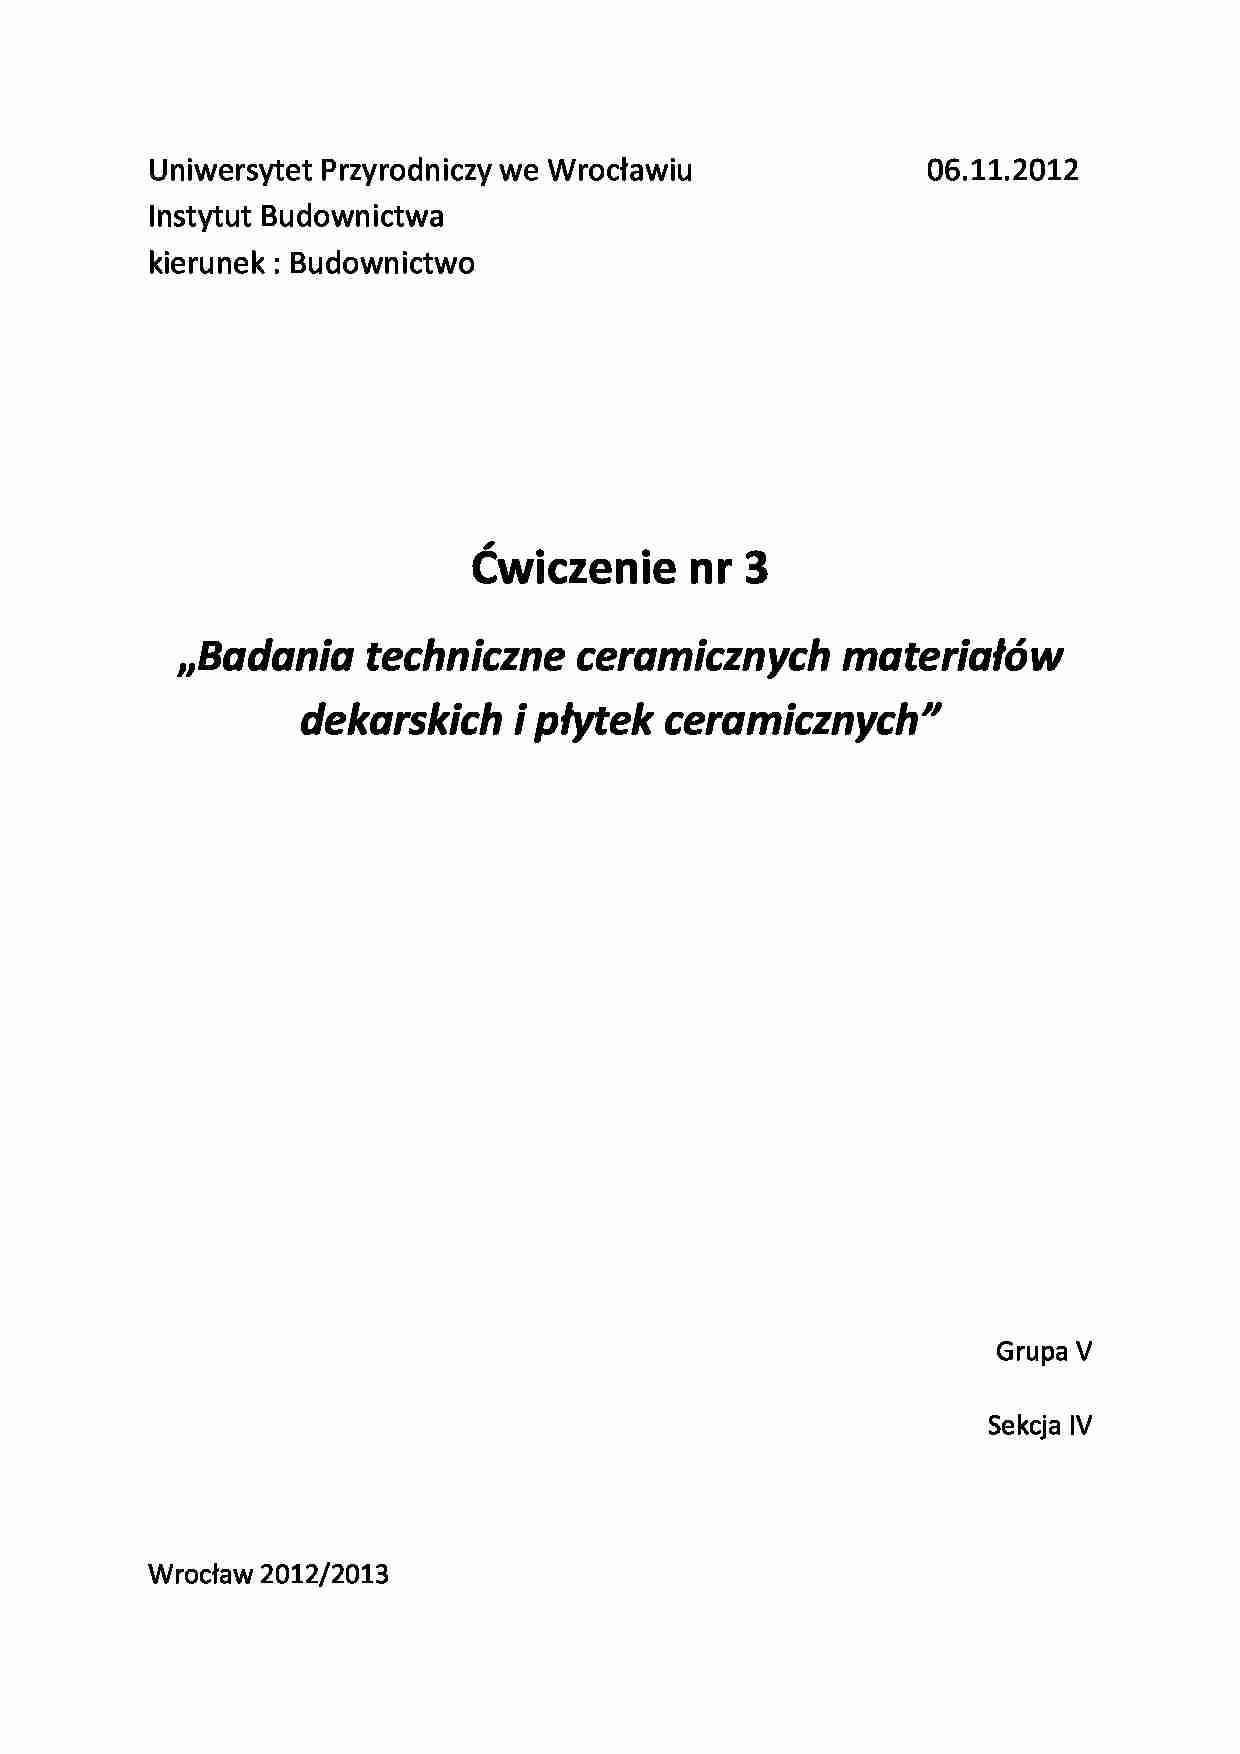 Badania techniczne ceramicznych materiałów dekarskich i płytek ceramicznych - strona 1